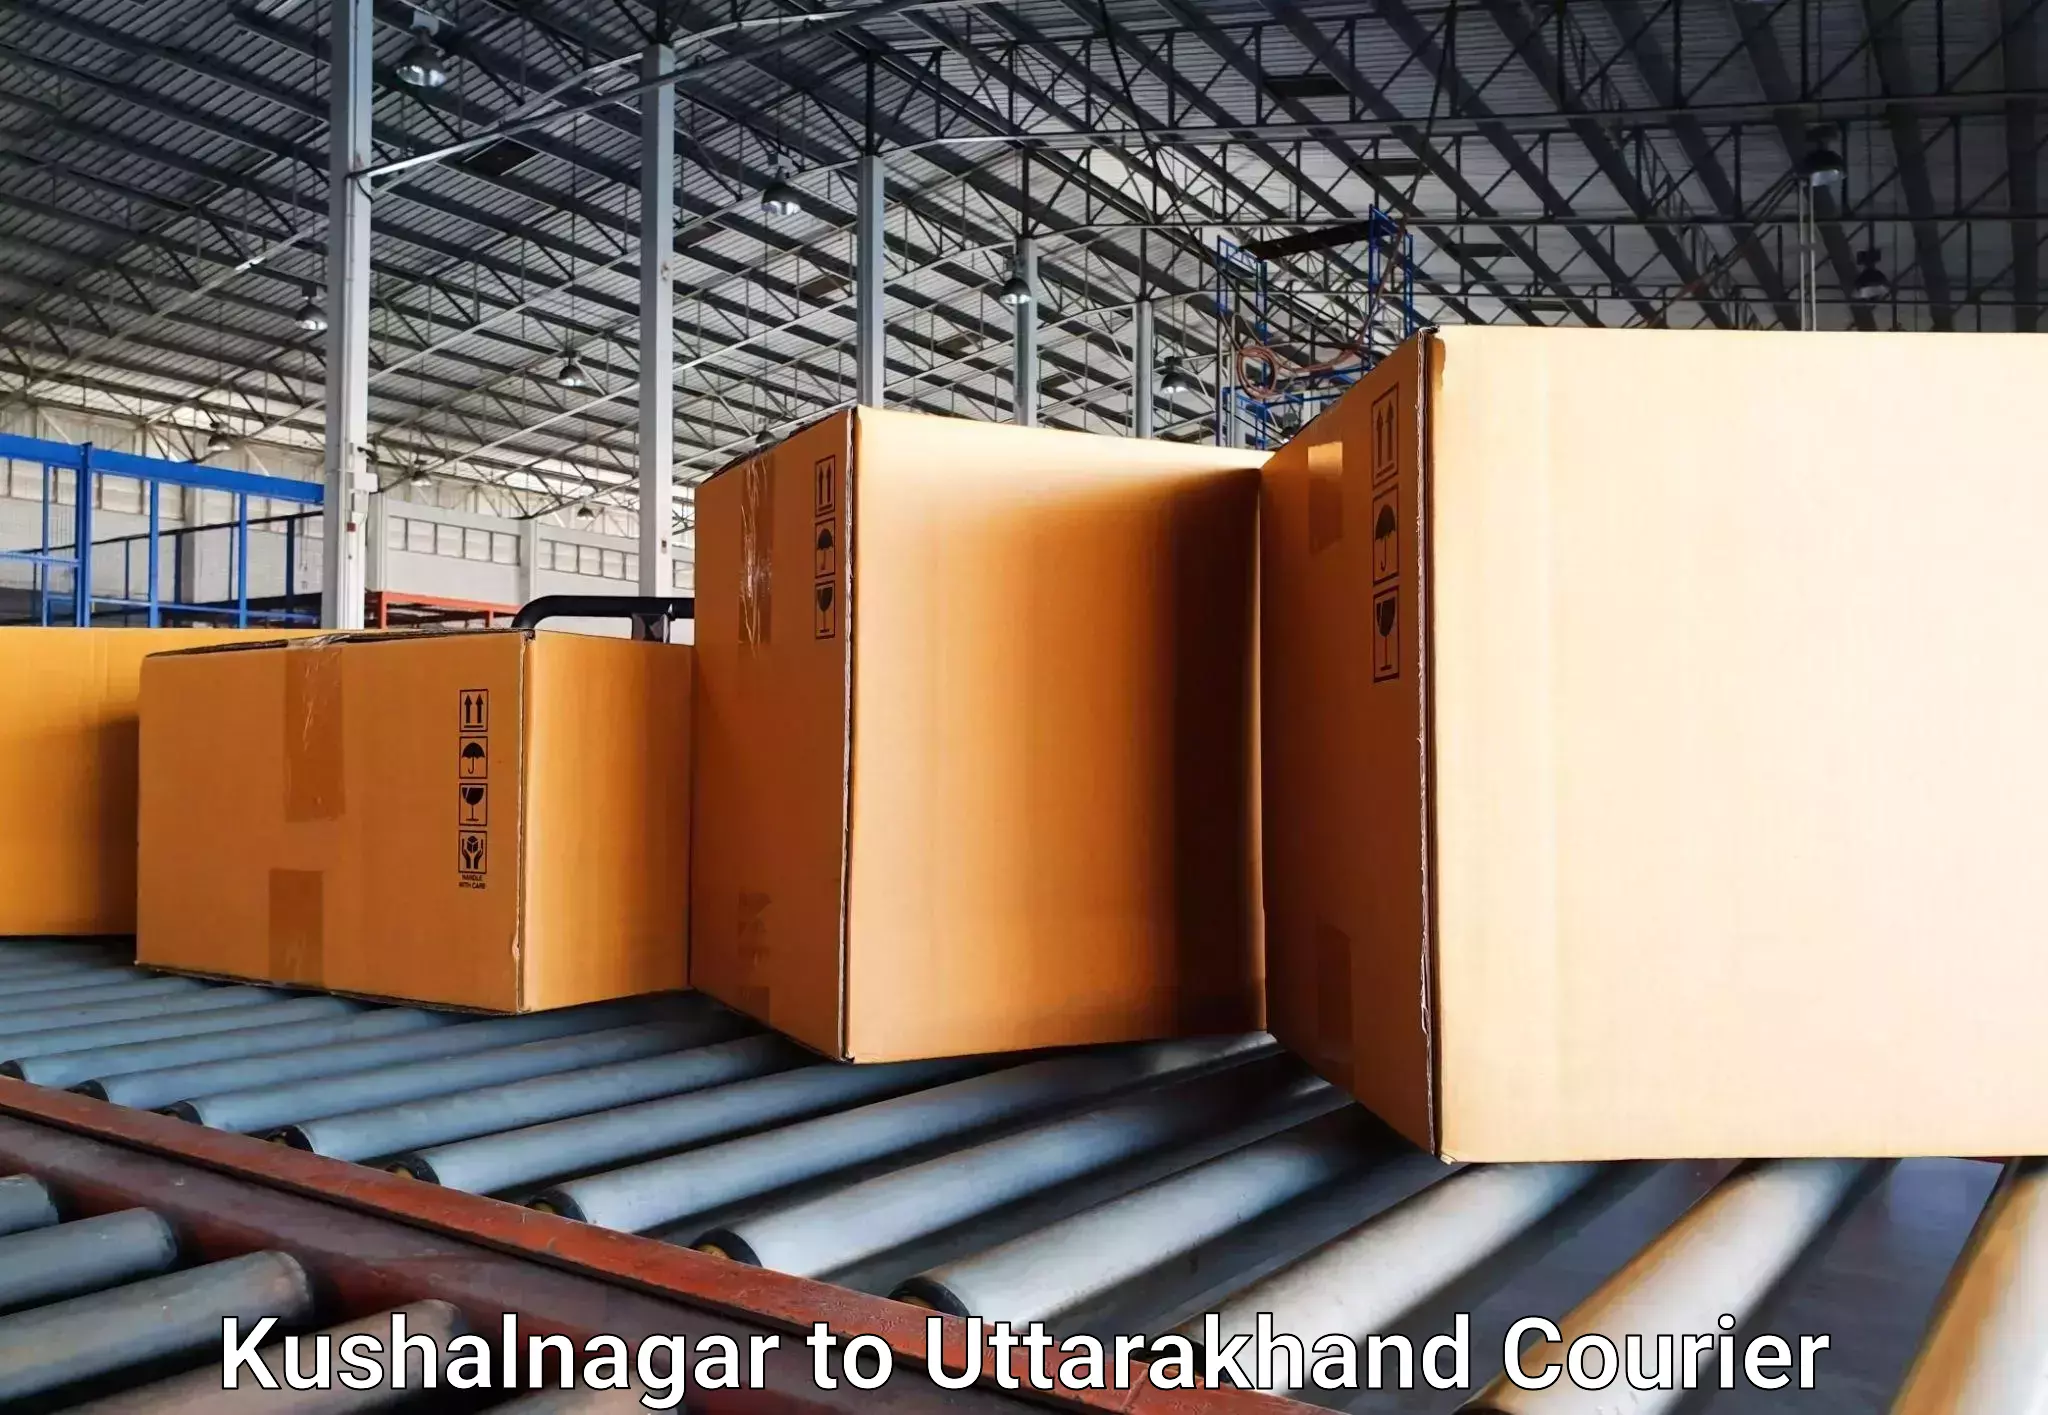 Luggage delivery network Kushalnagar to Doiwala